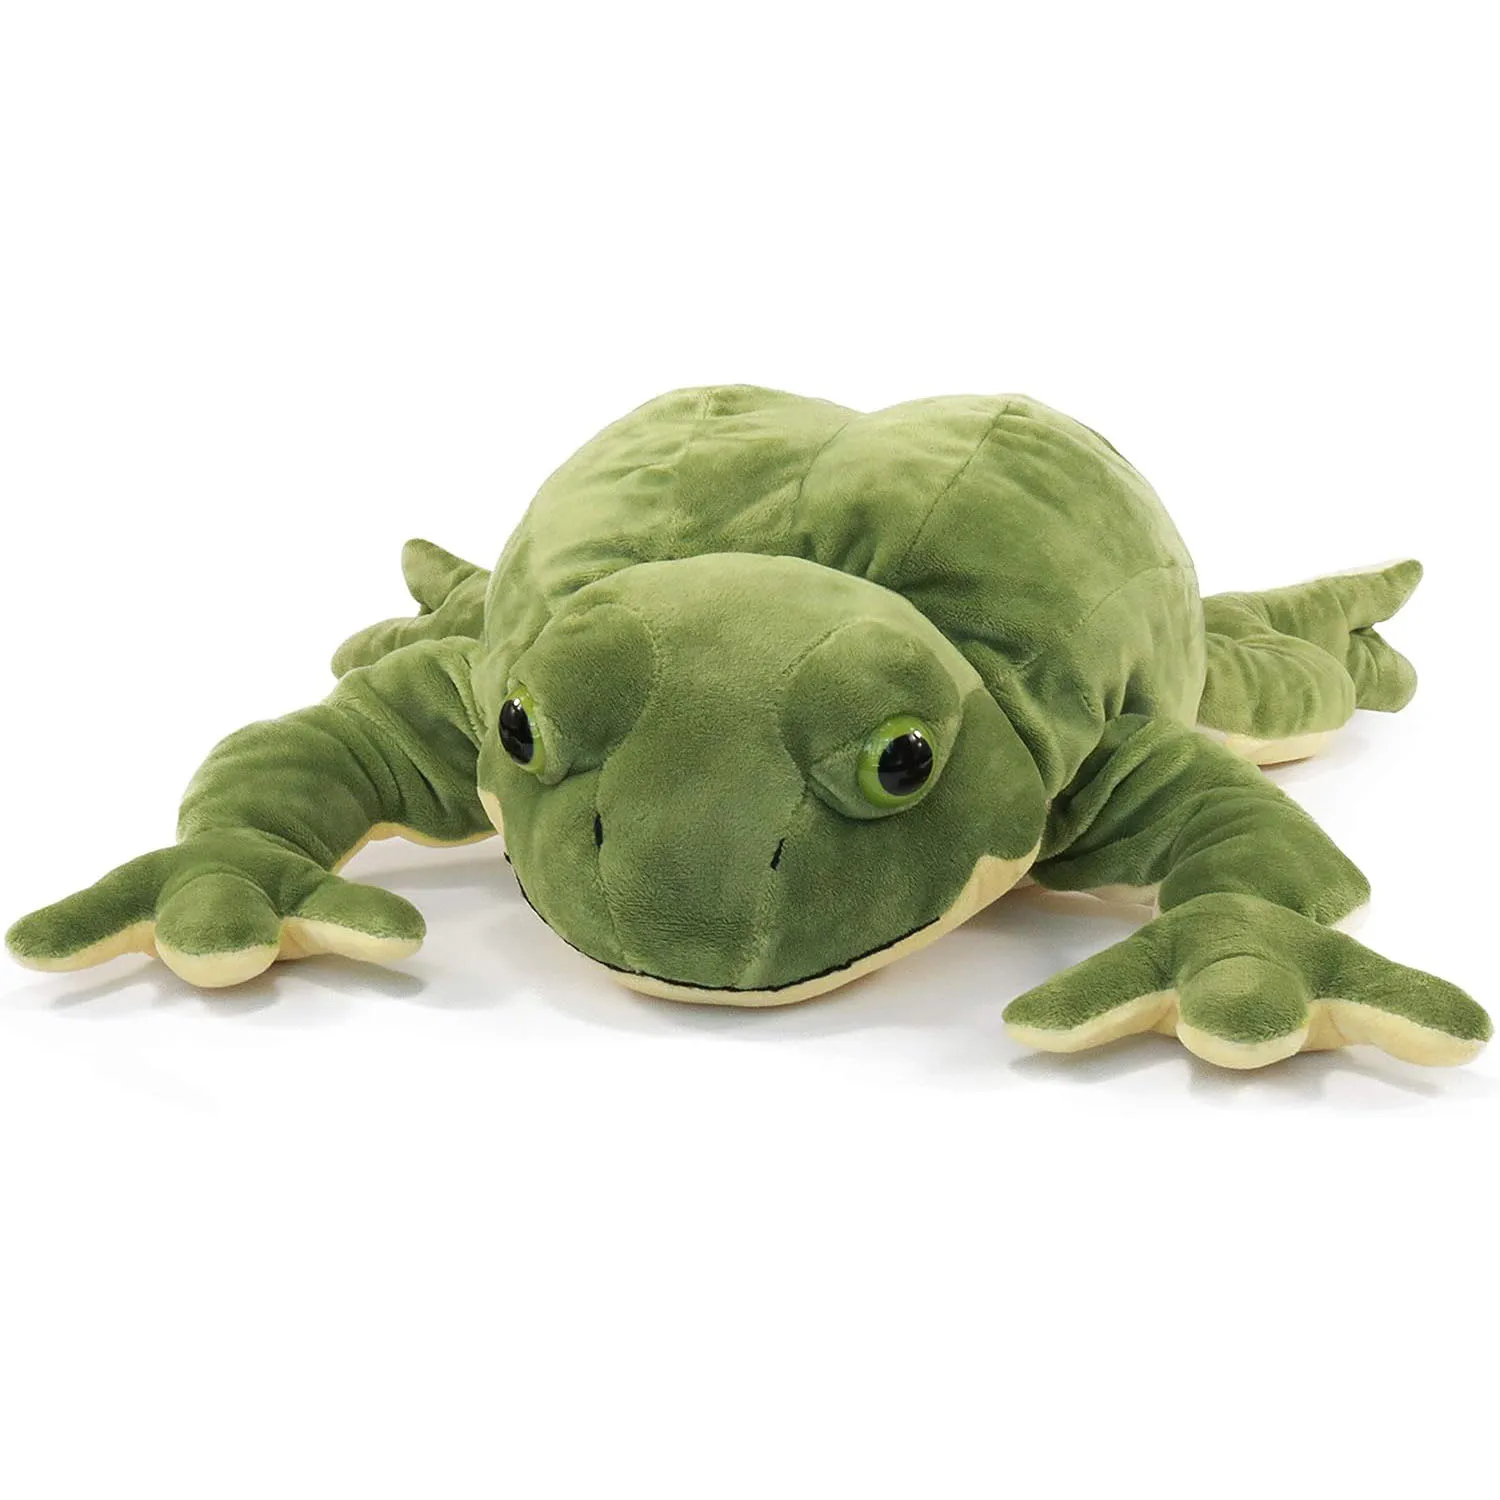 https://ae01.alicdn.com/kf/S6d260494f1214dbebabdd1331cb67491E/60cm-Giant-Frog-Plush-Kawaii-Soft-Stuffed-Animal-Green-Frog-Pillow-Birthday-Gift-for-Kids.jpg